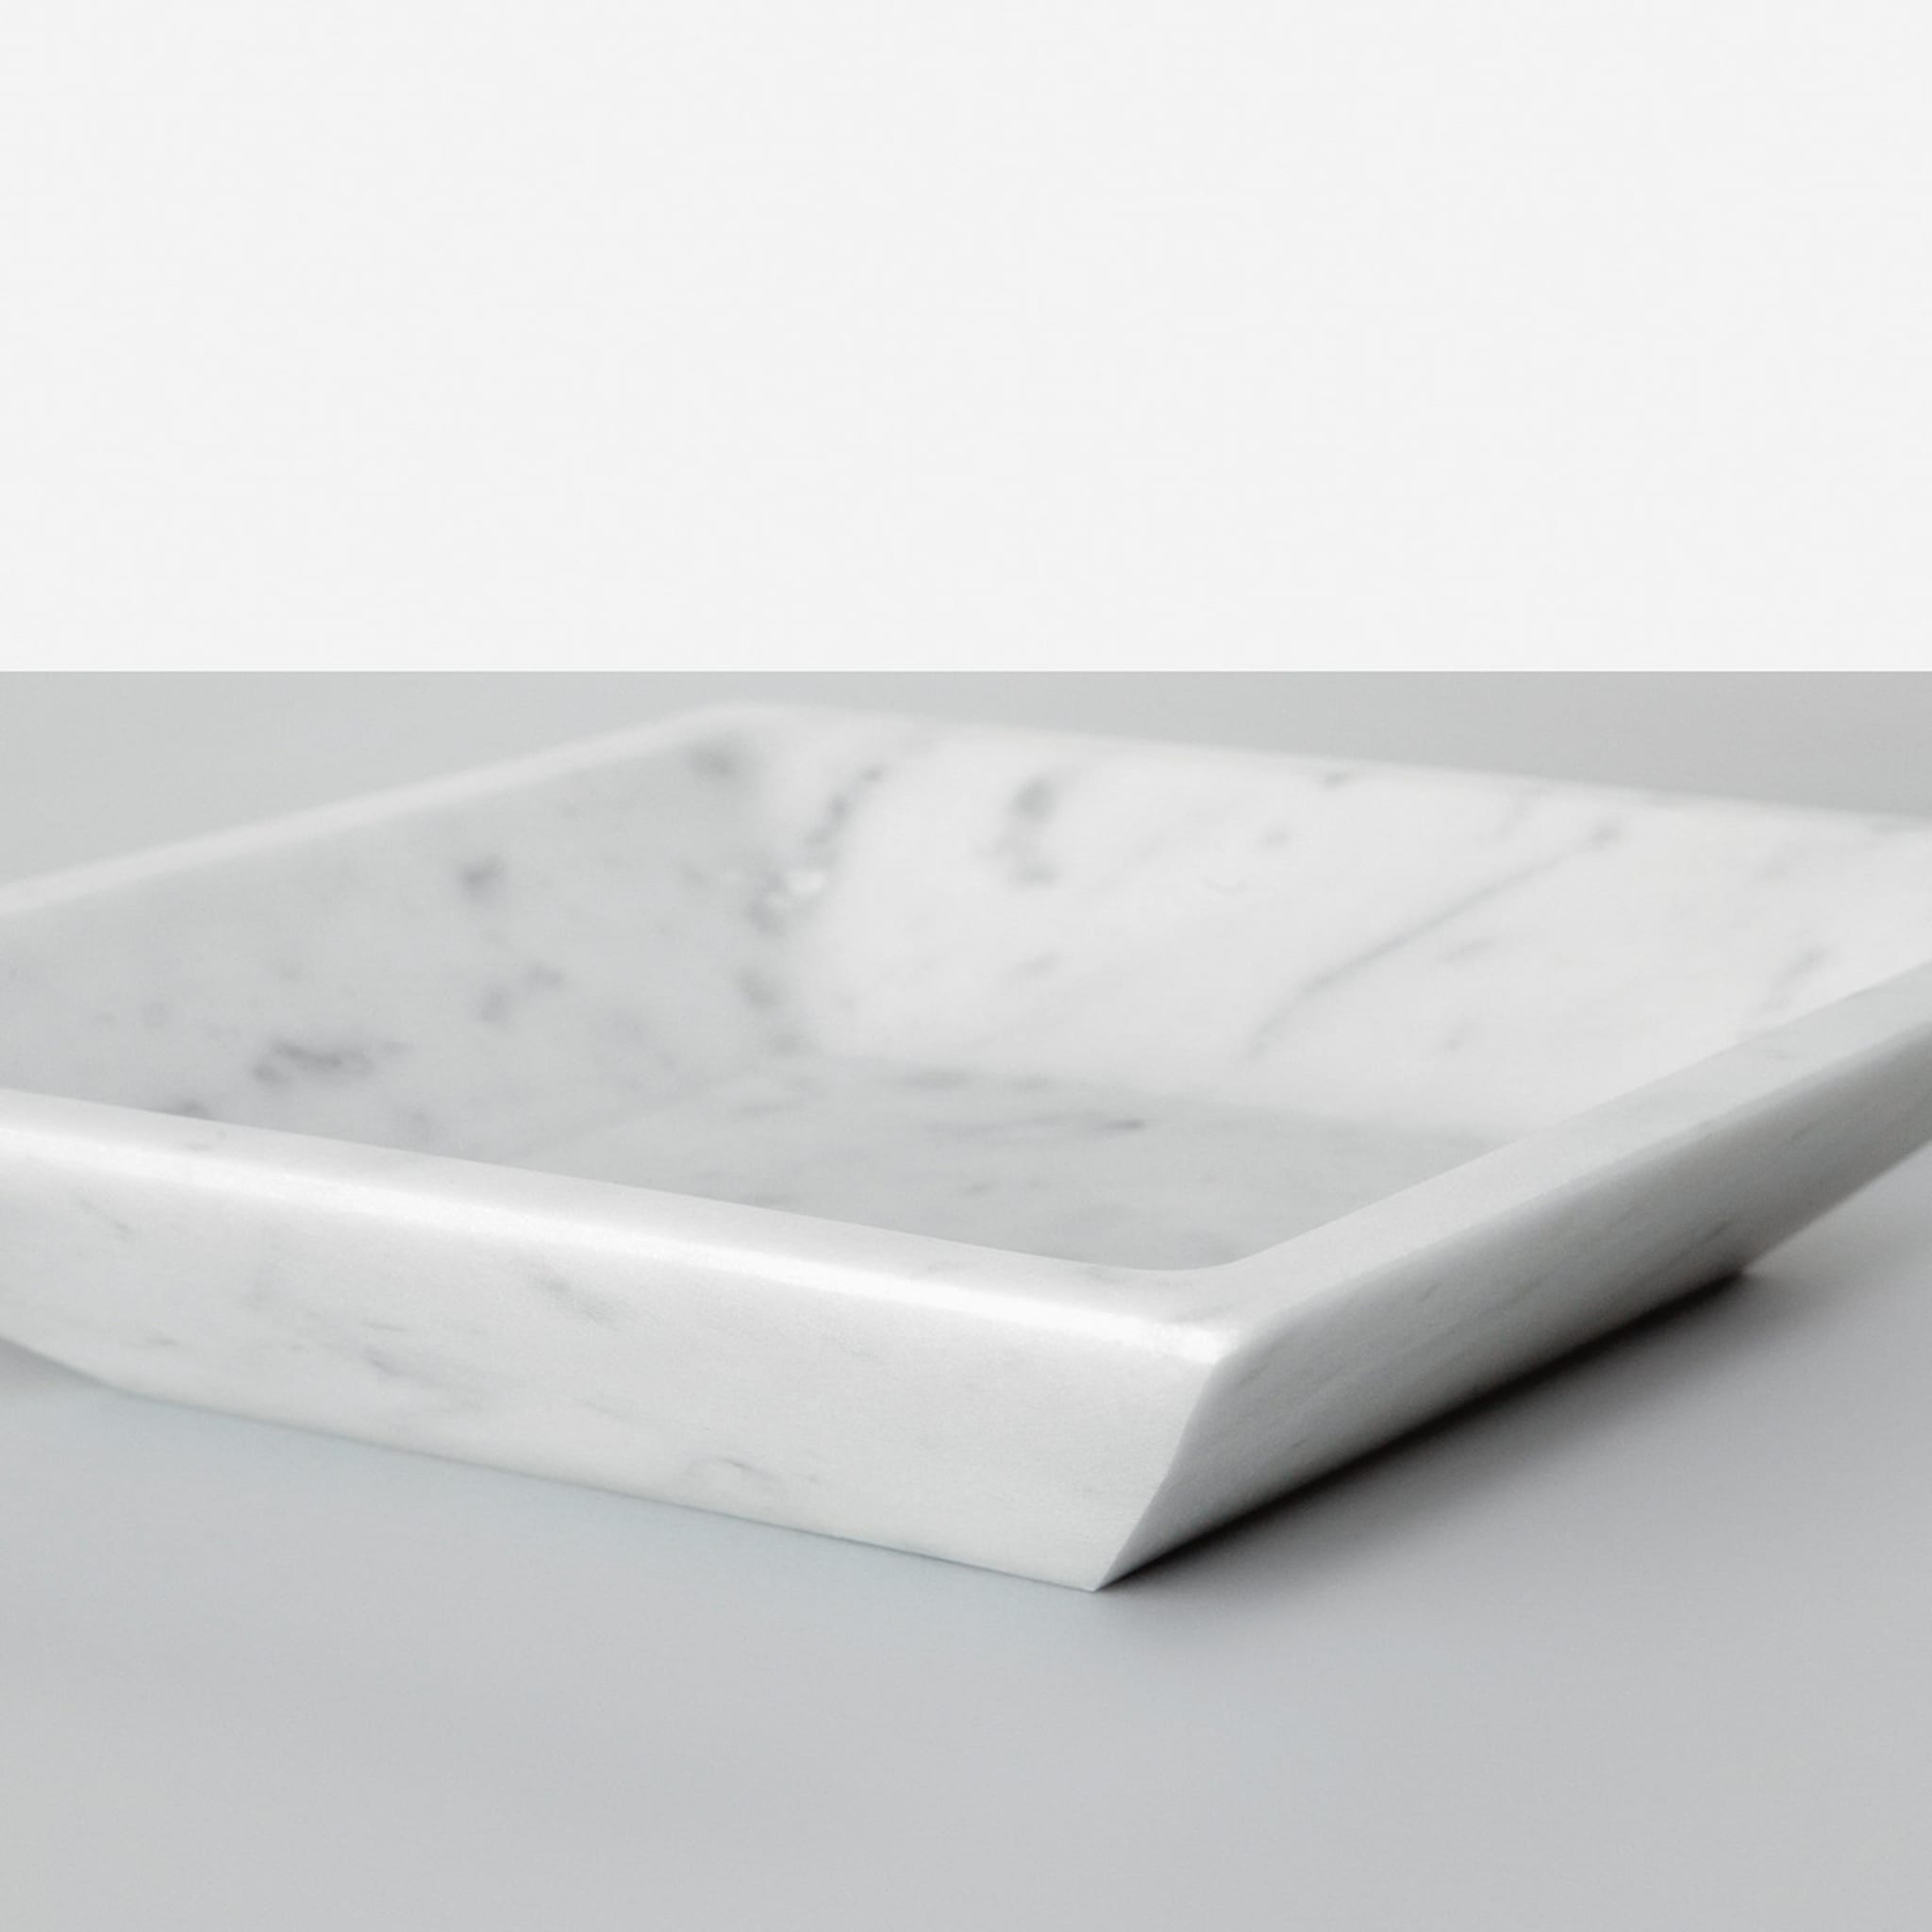 Weißer Carrara-Suppenteller (quadratisch) von Studioformart - Alternative Ansicht 1